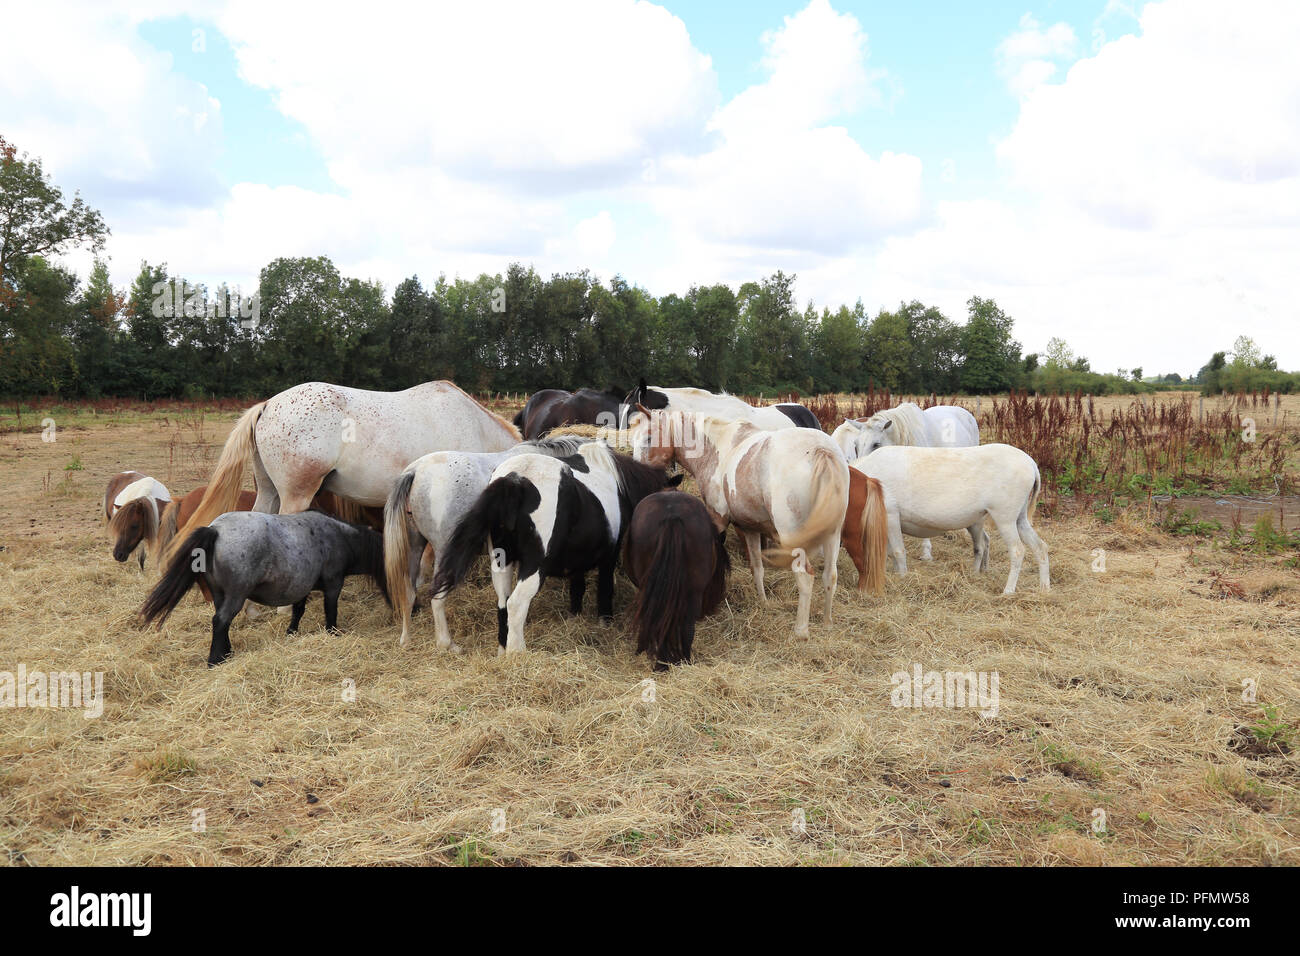 Una manada de caballos y ponys en un paddock Foto de stock